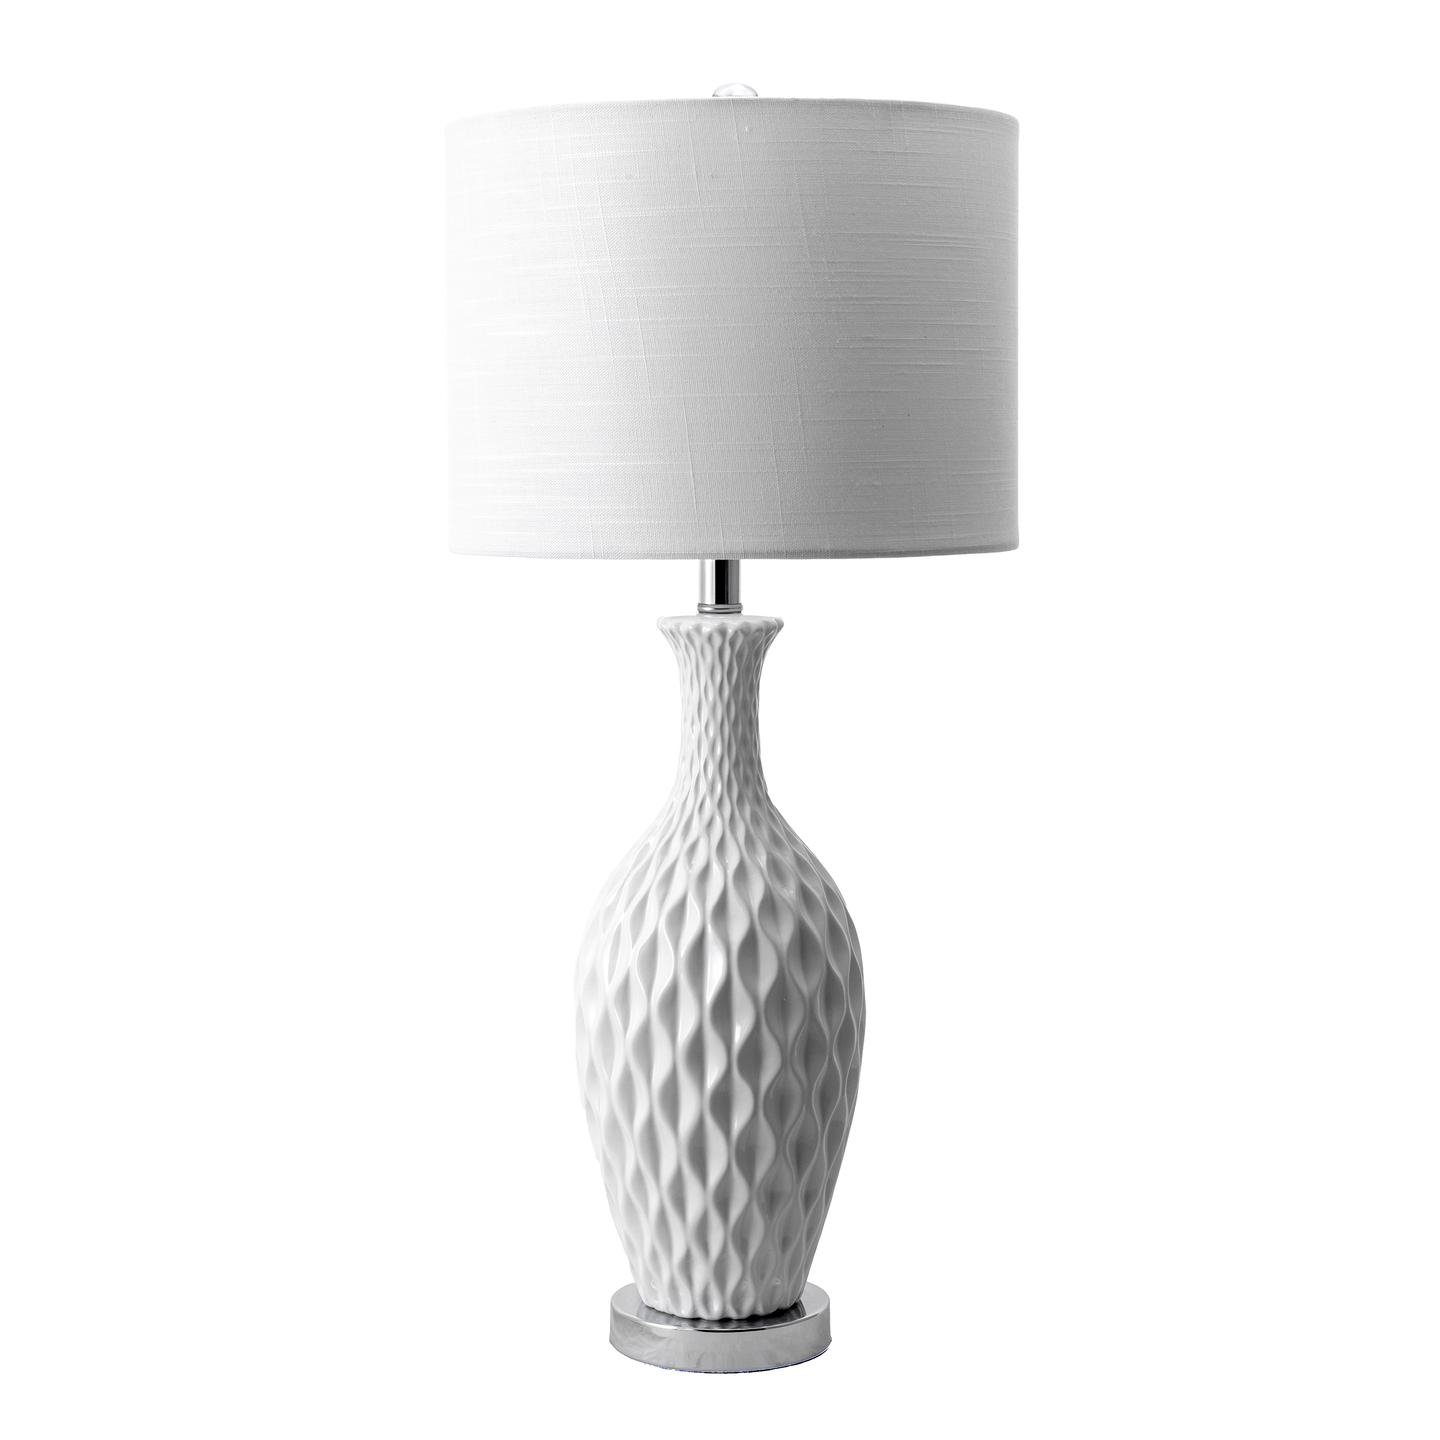  Irvine 28" Ceramic Table Lamp - Image 2